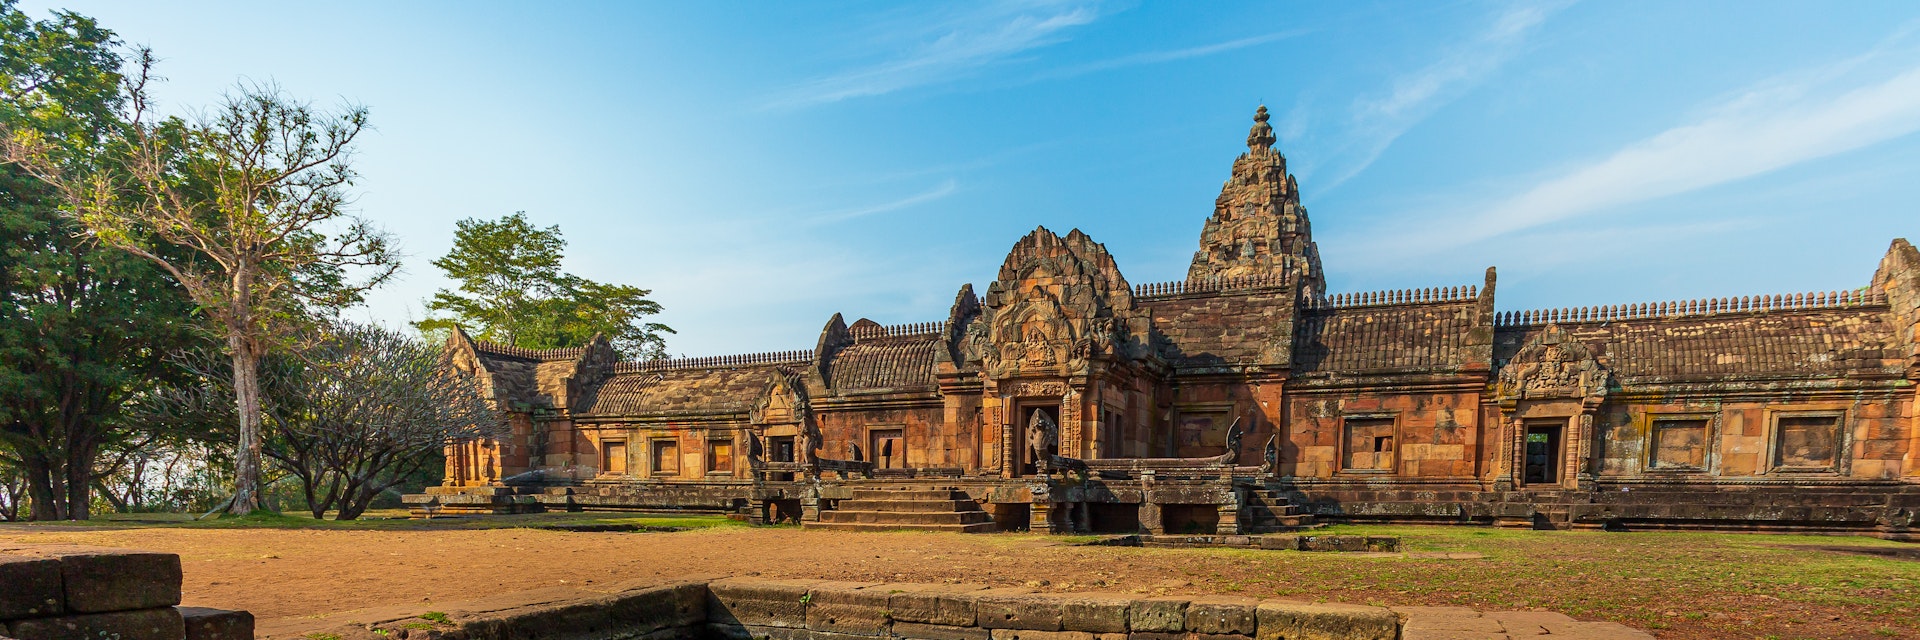 Buriram, Asia, Thailand, Ancient, Architecture